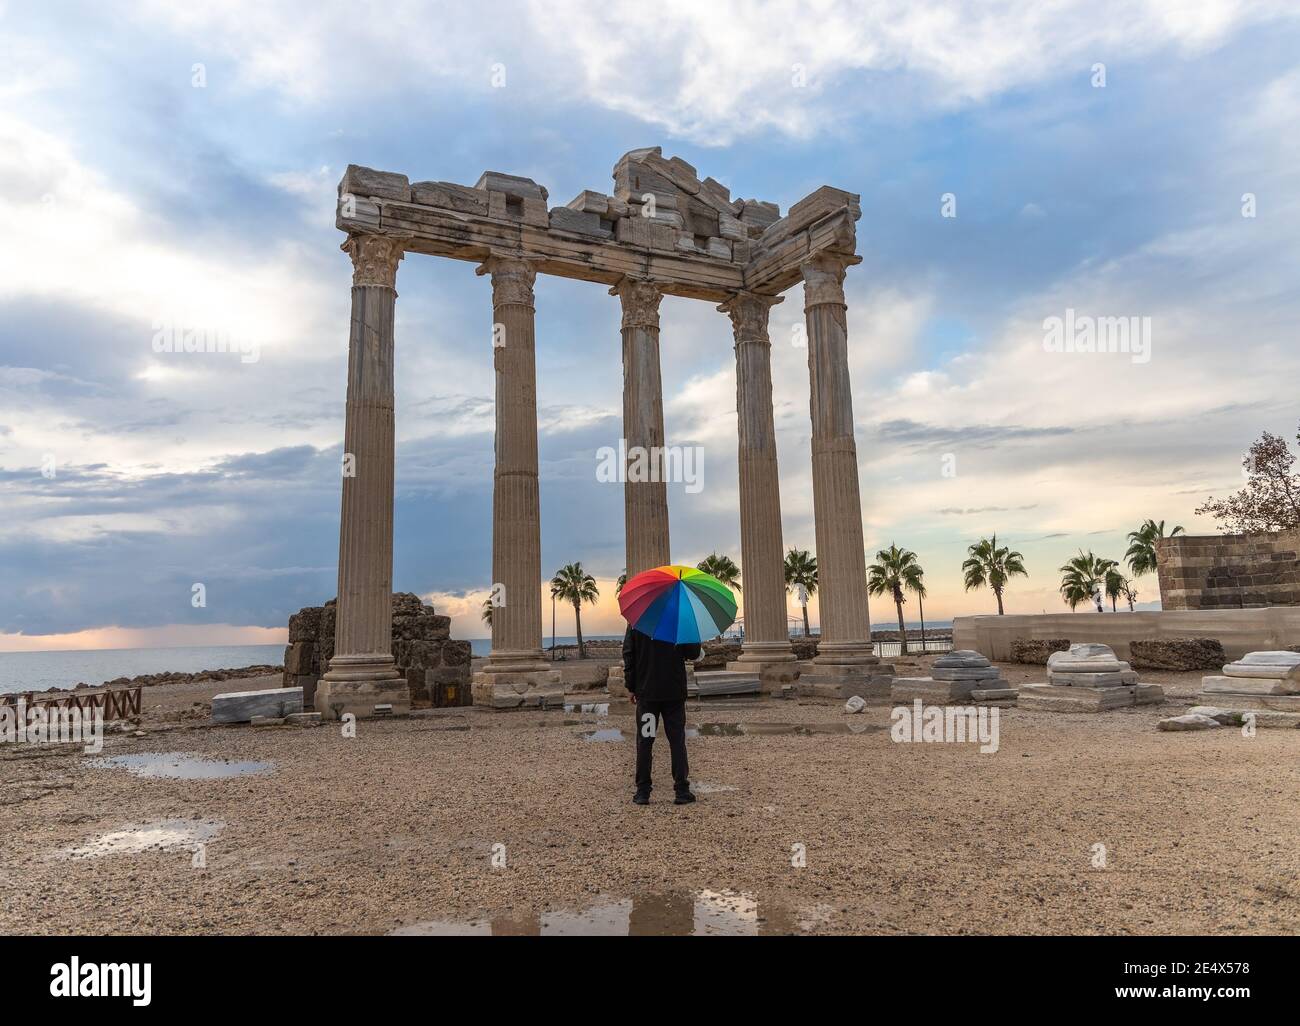 Un hombre vestido de negro con un paraguas de colores arcoiris se encuentra frente al Templo de Apolo en el lado antiguo de la ciudad en el día lluvioso y nublado. Foto de stock